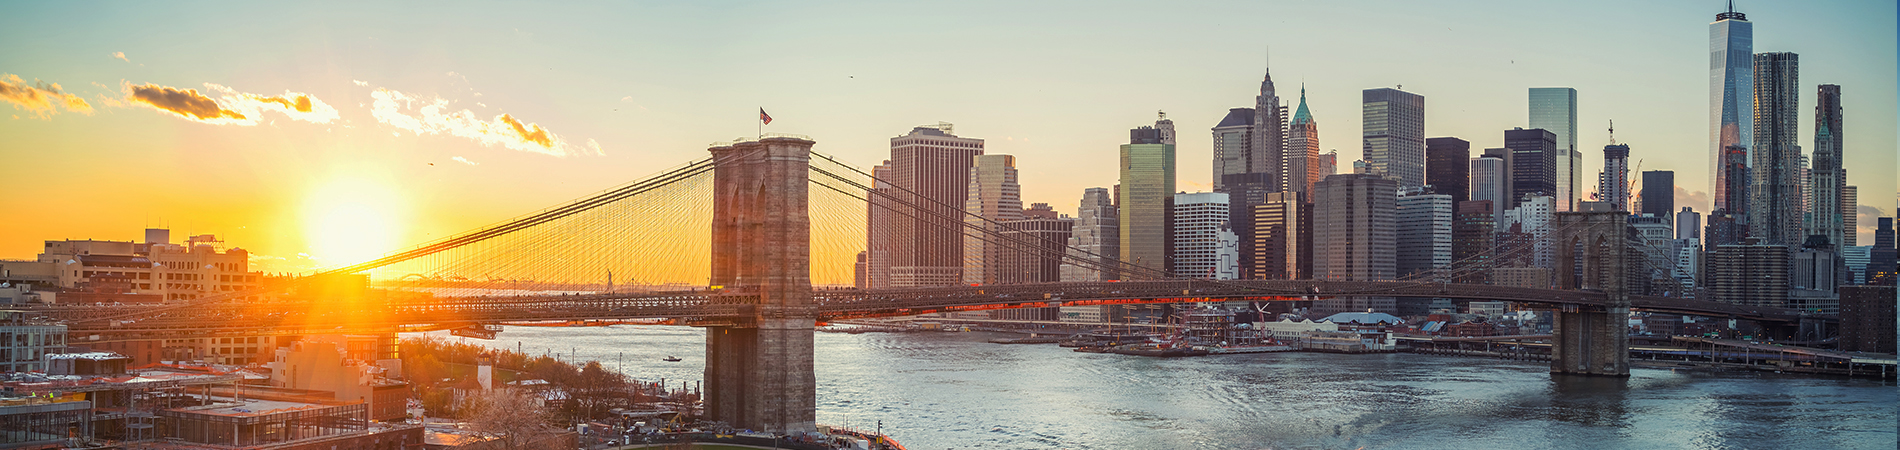 Puente de Brooklyn y Manhattan al atardecer, ciudad de Nueva York